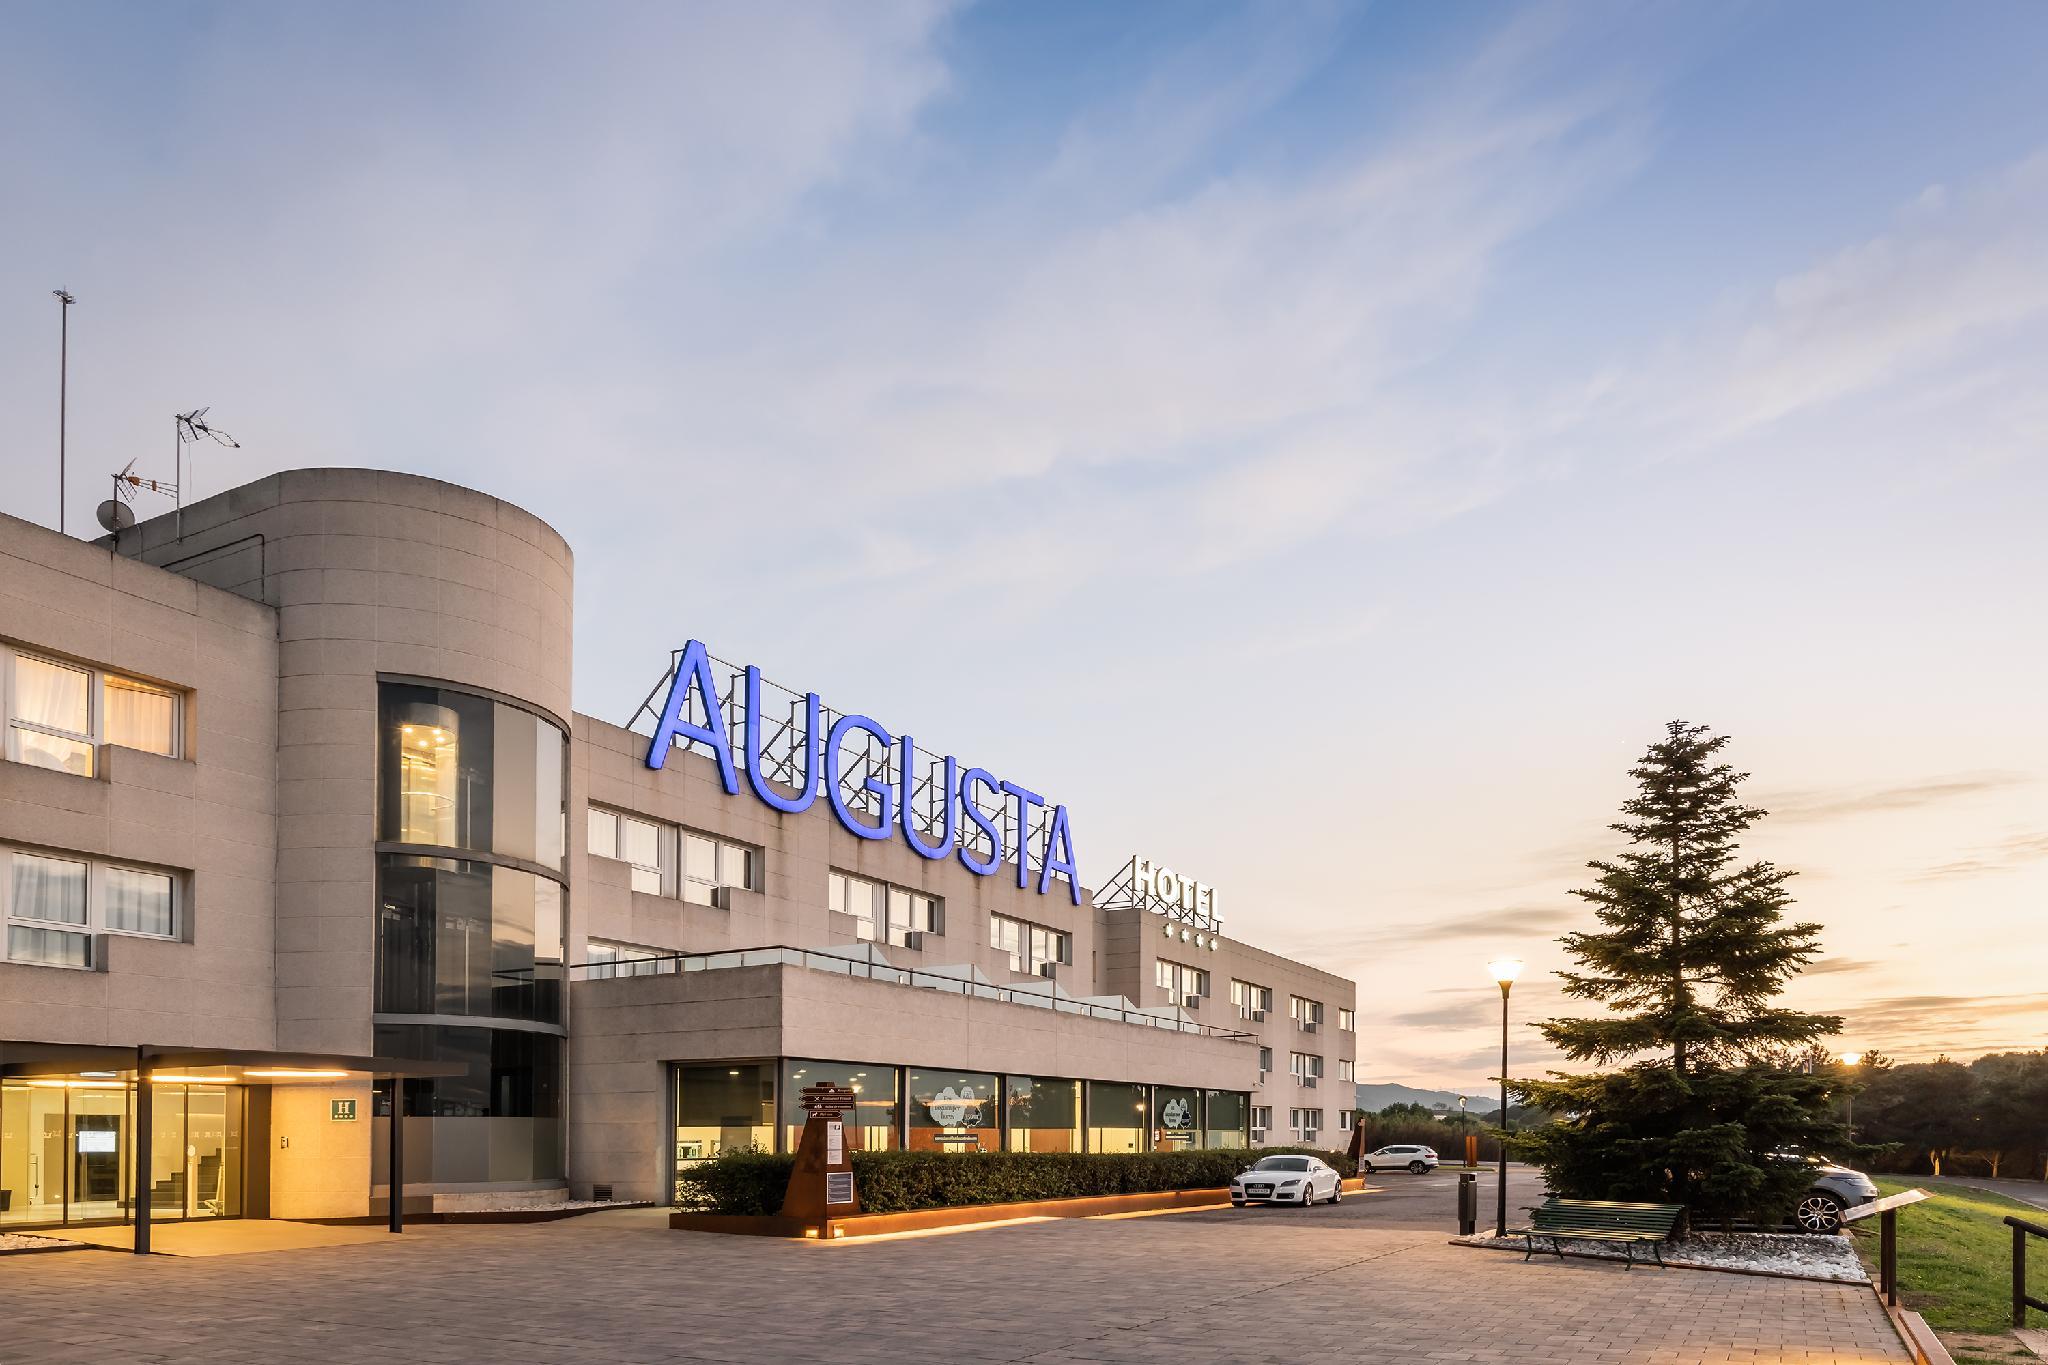 Hotel Augusta Vallés - Montornés del Vallés